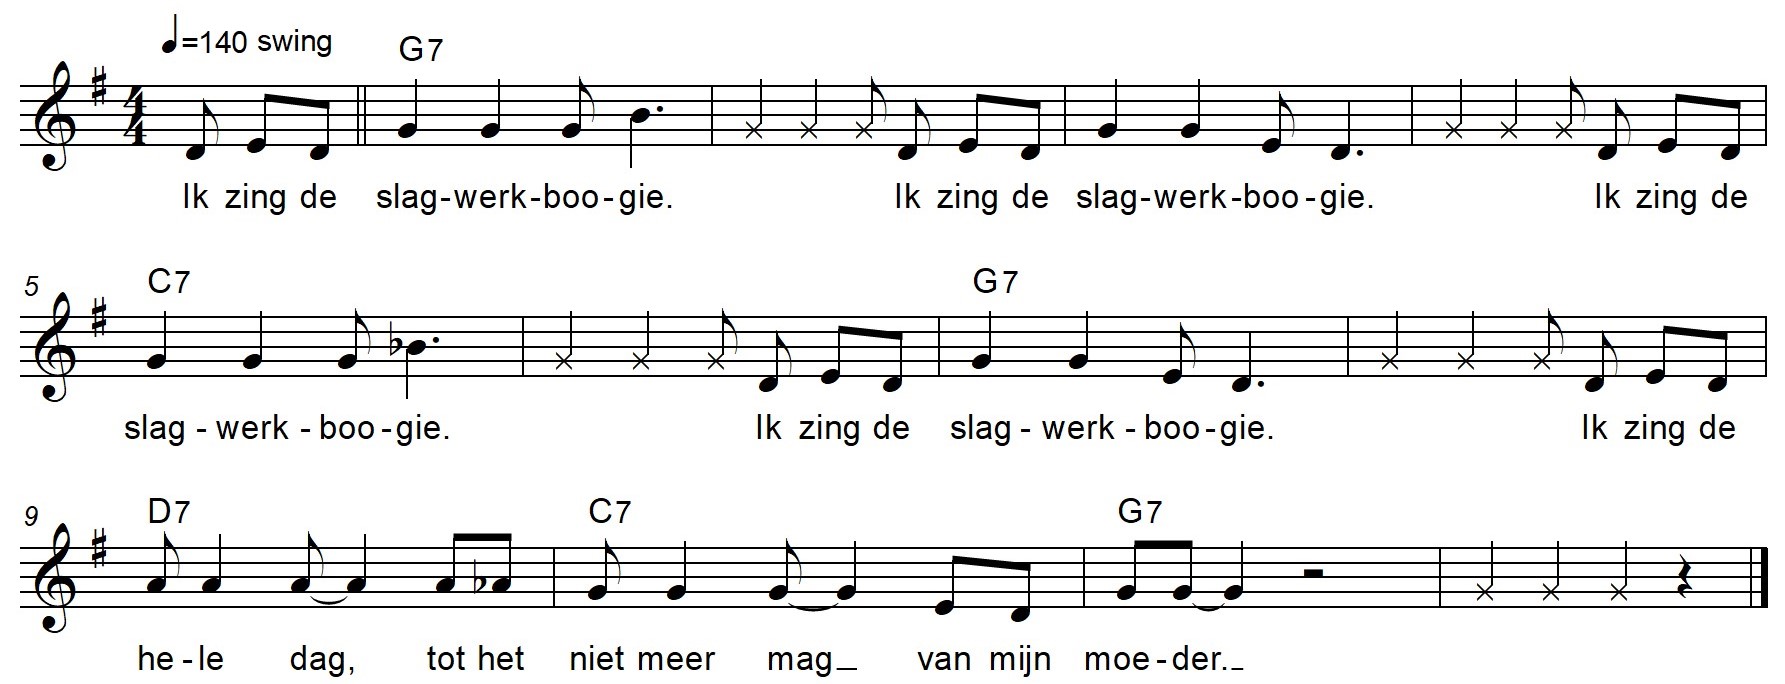 De 'Slagwerkboogie', lied van Suzan Overmeer. Hierin wisselen gezongen tekst en met bodypercussie of slaginstrumenten gespeelde ritmes zich af. 